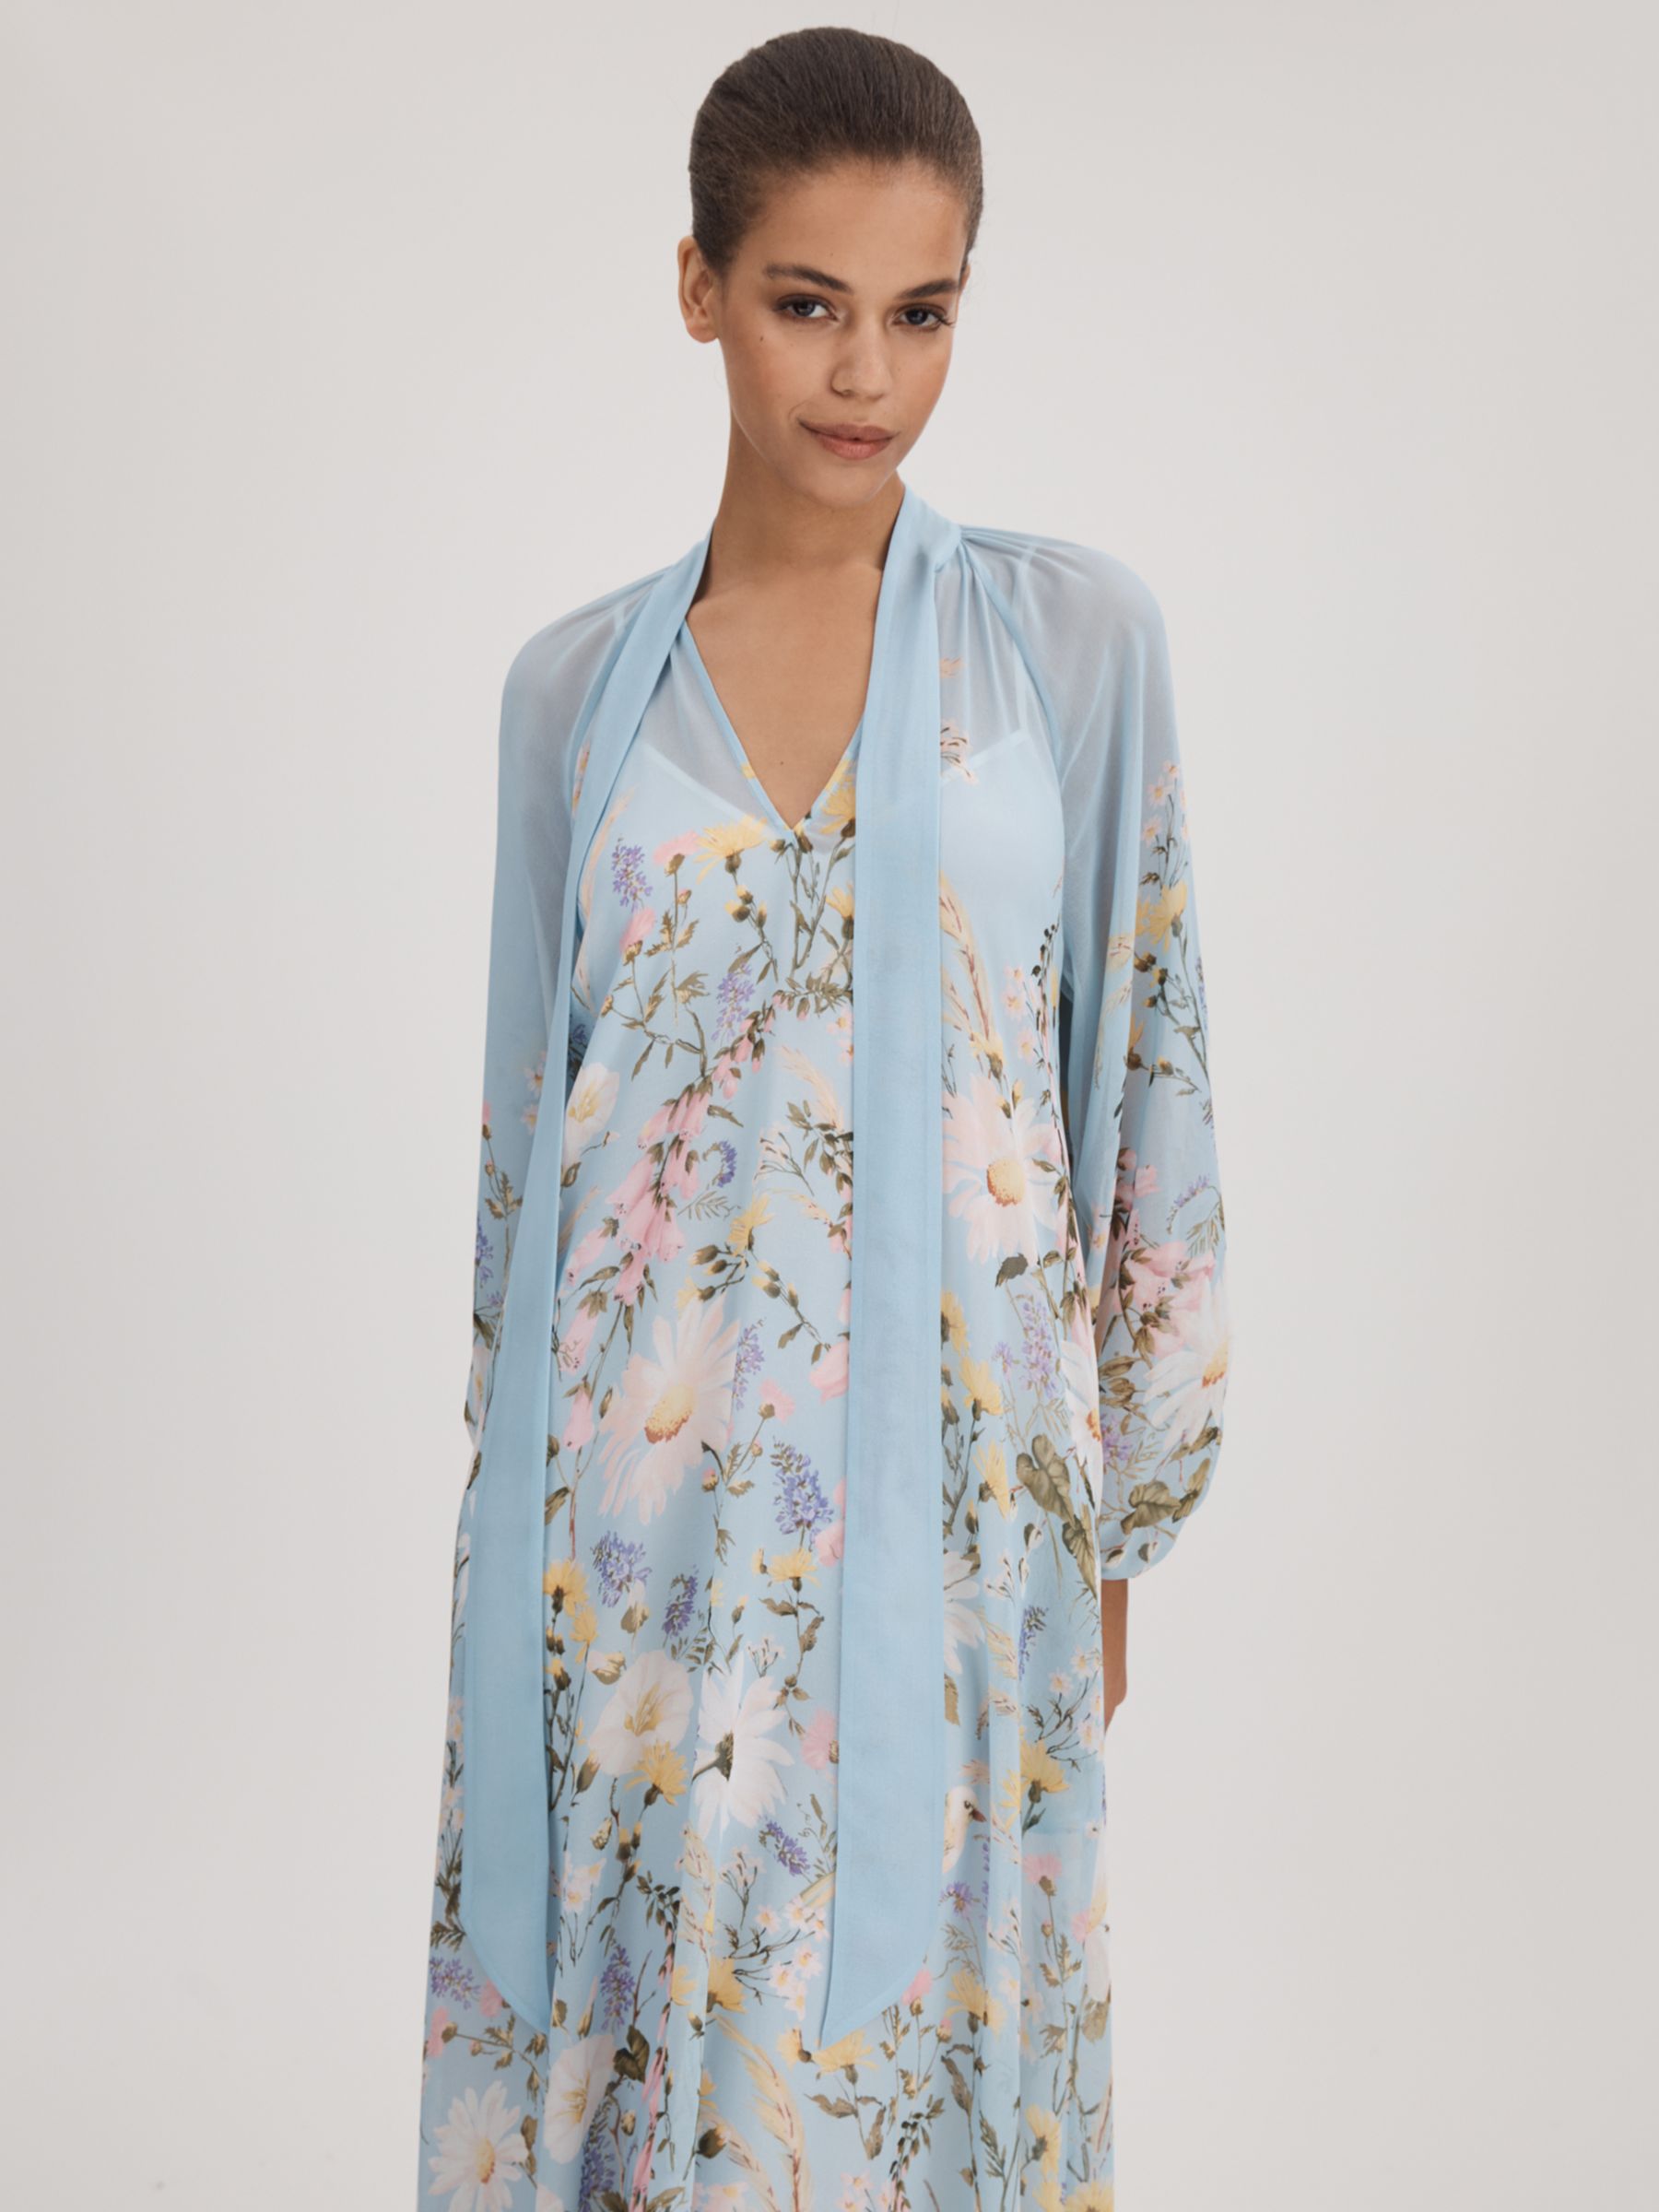 FLORERE Tie Neck Floral Maxi Dress, Pale Blue, 12